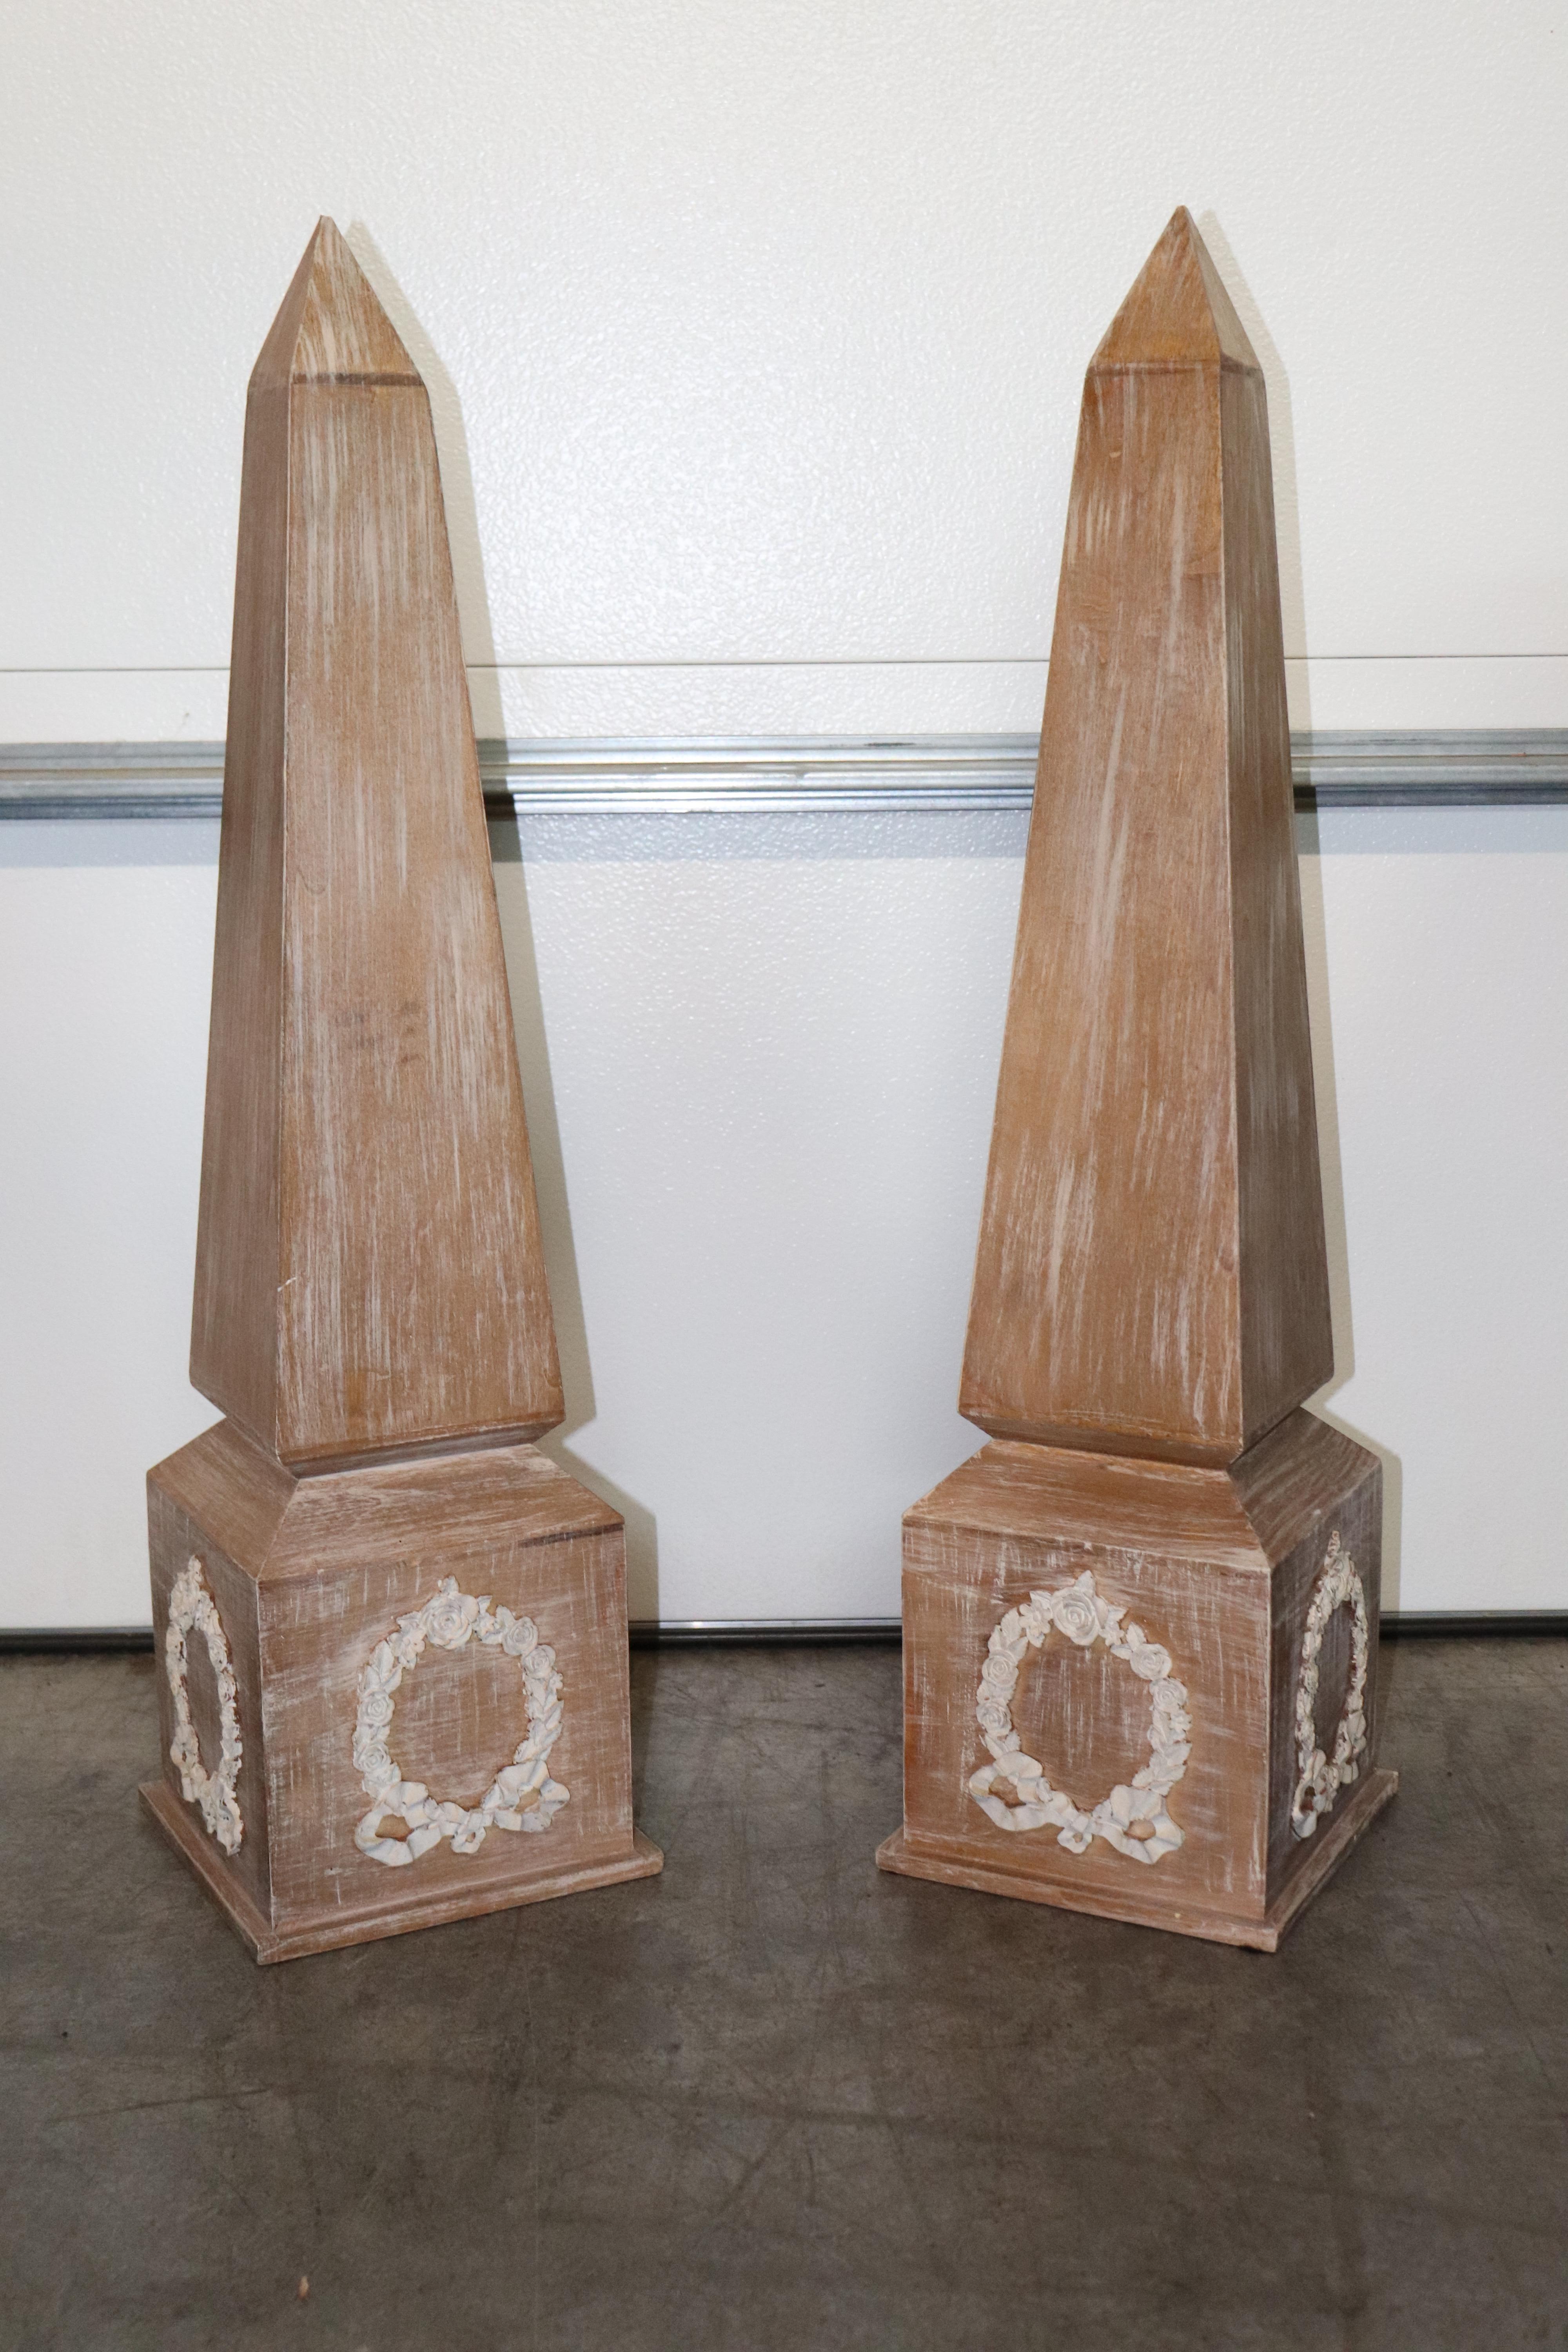 Dies ist ein wunderbares Paar ägyptischer Obelisken im französischen Empire-Stil mit geschnitzten Kränzen auf jeder Seite des Sockels. Die Obelisken sind aus Eichenholz gefertigt und für ein edles Finish keramisiert. Sie messen 33,75 Zoll hoch x